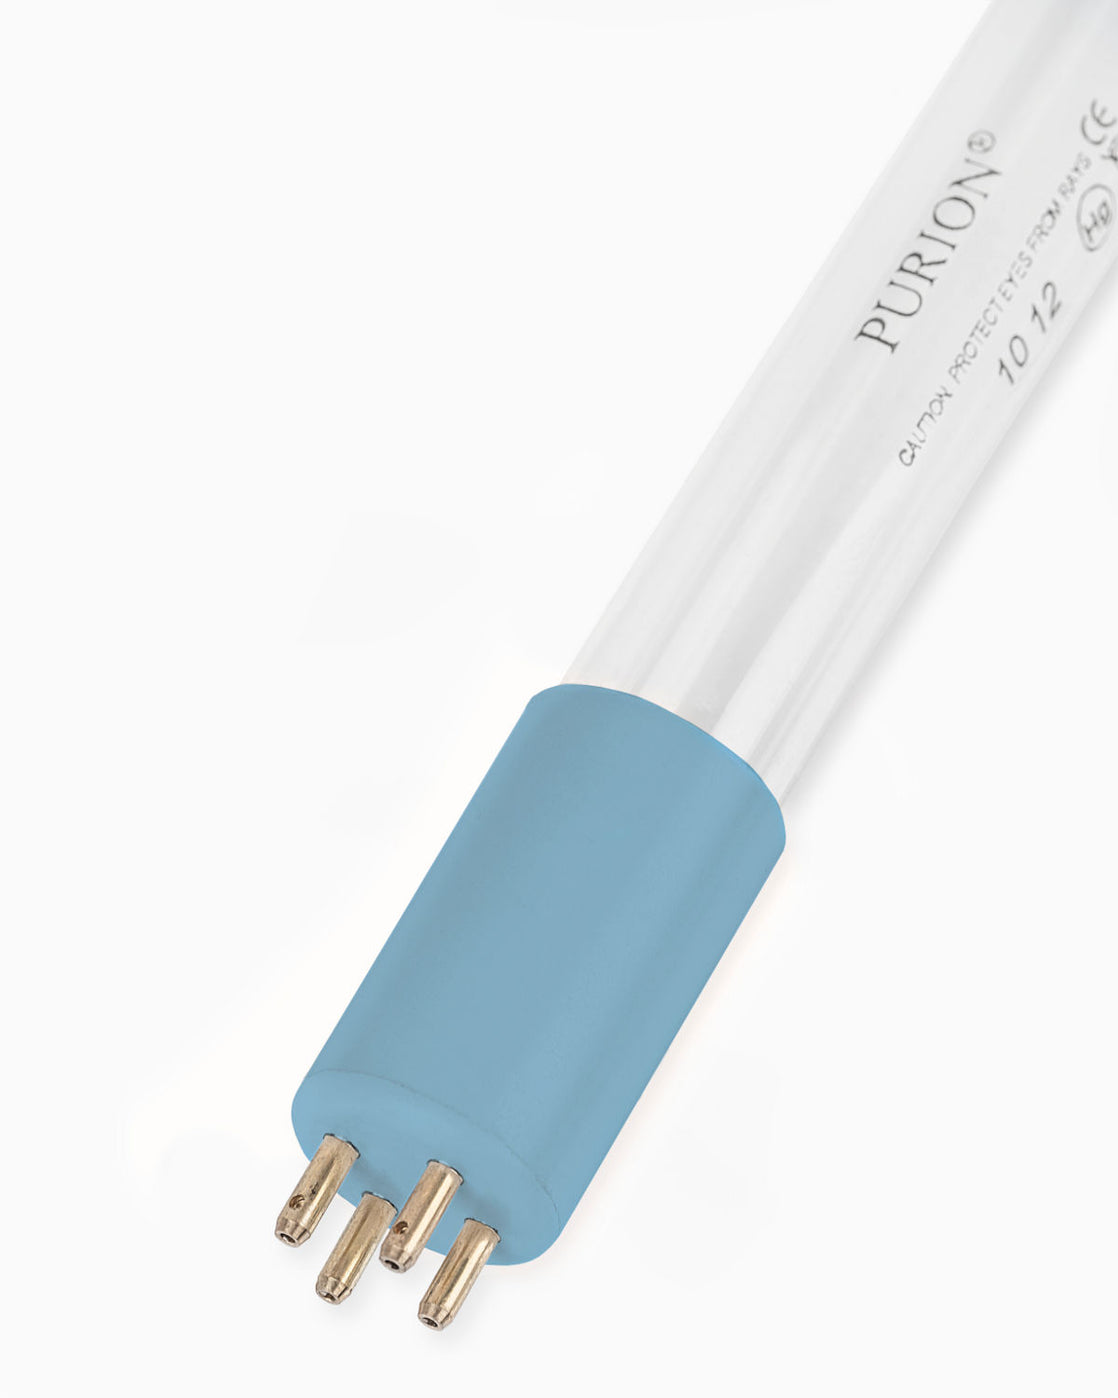 Ein PURION 2001 PVC-U OTC Bundle der PURION GmbH, eine blaue UV-C-Lichtröhre auf weißem Hintergrund zur Wasserreinigung.